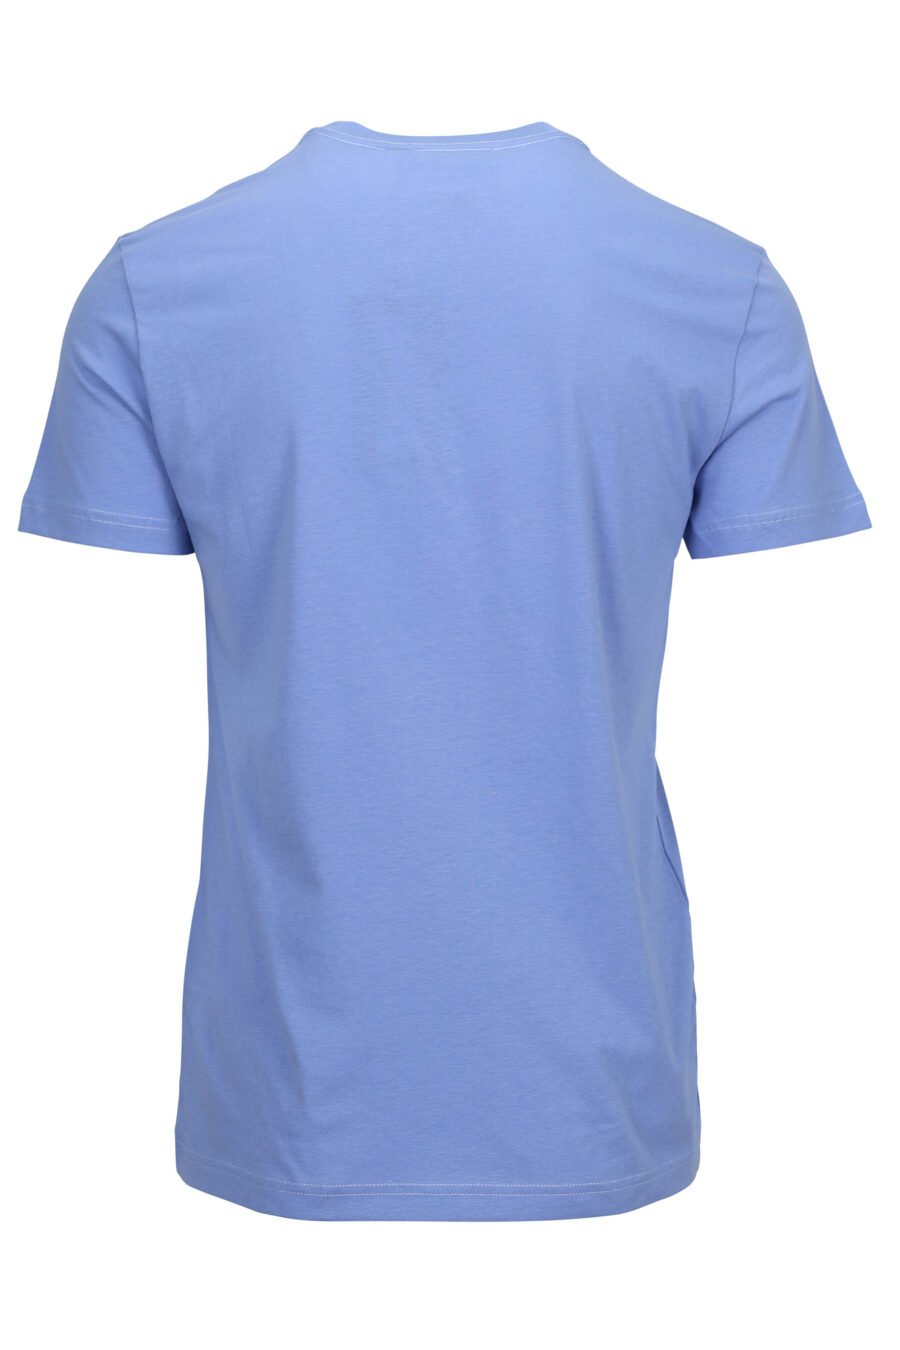 Camiseta azul claro con minilogo circular brillante - 8052019597455 1